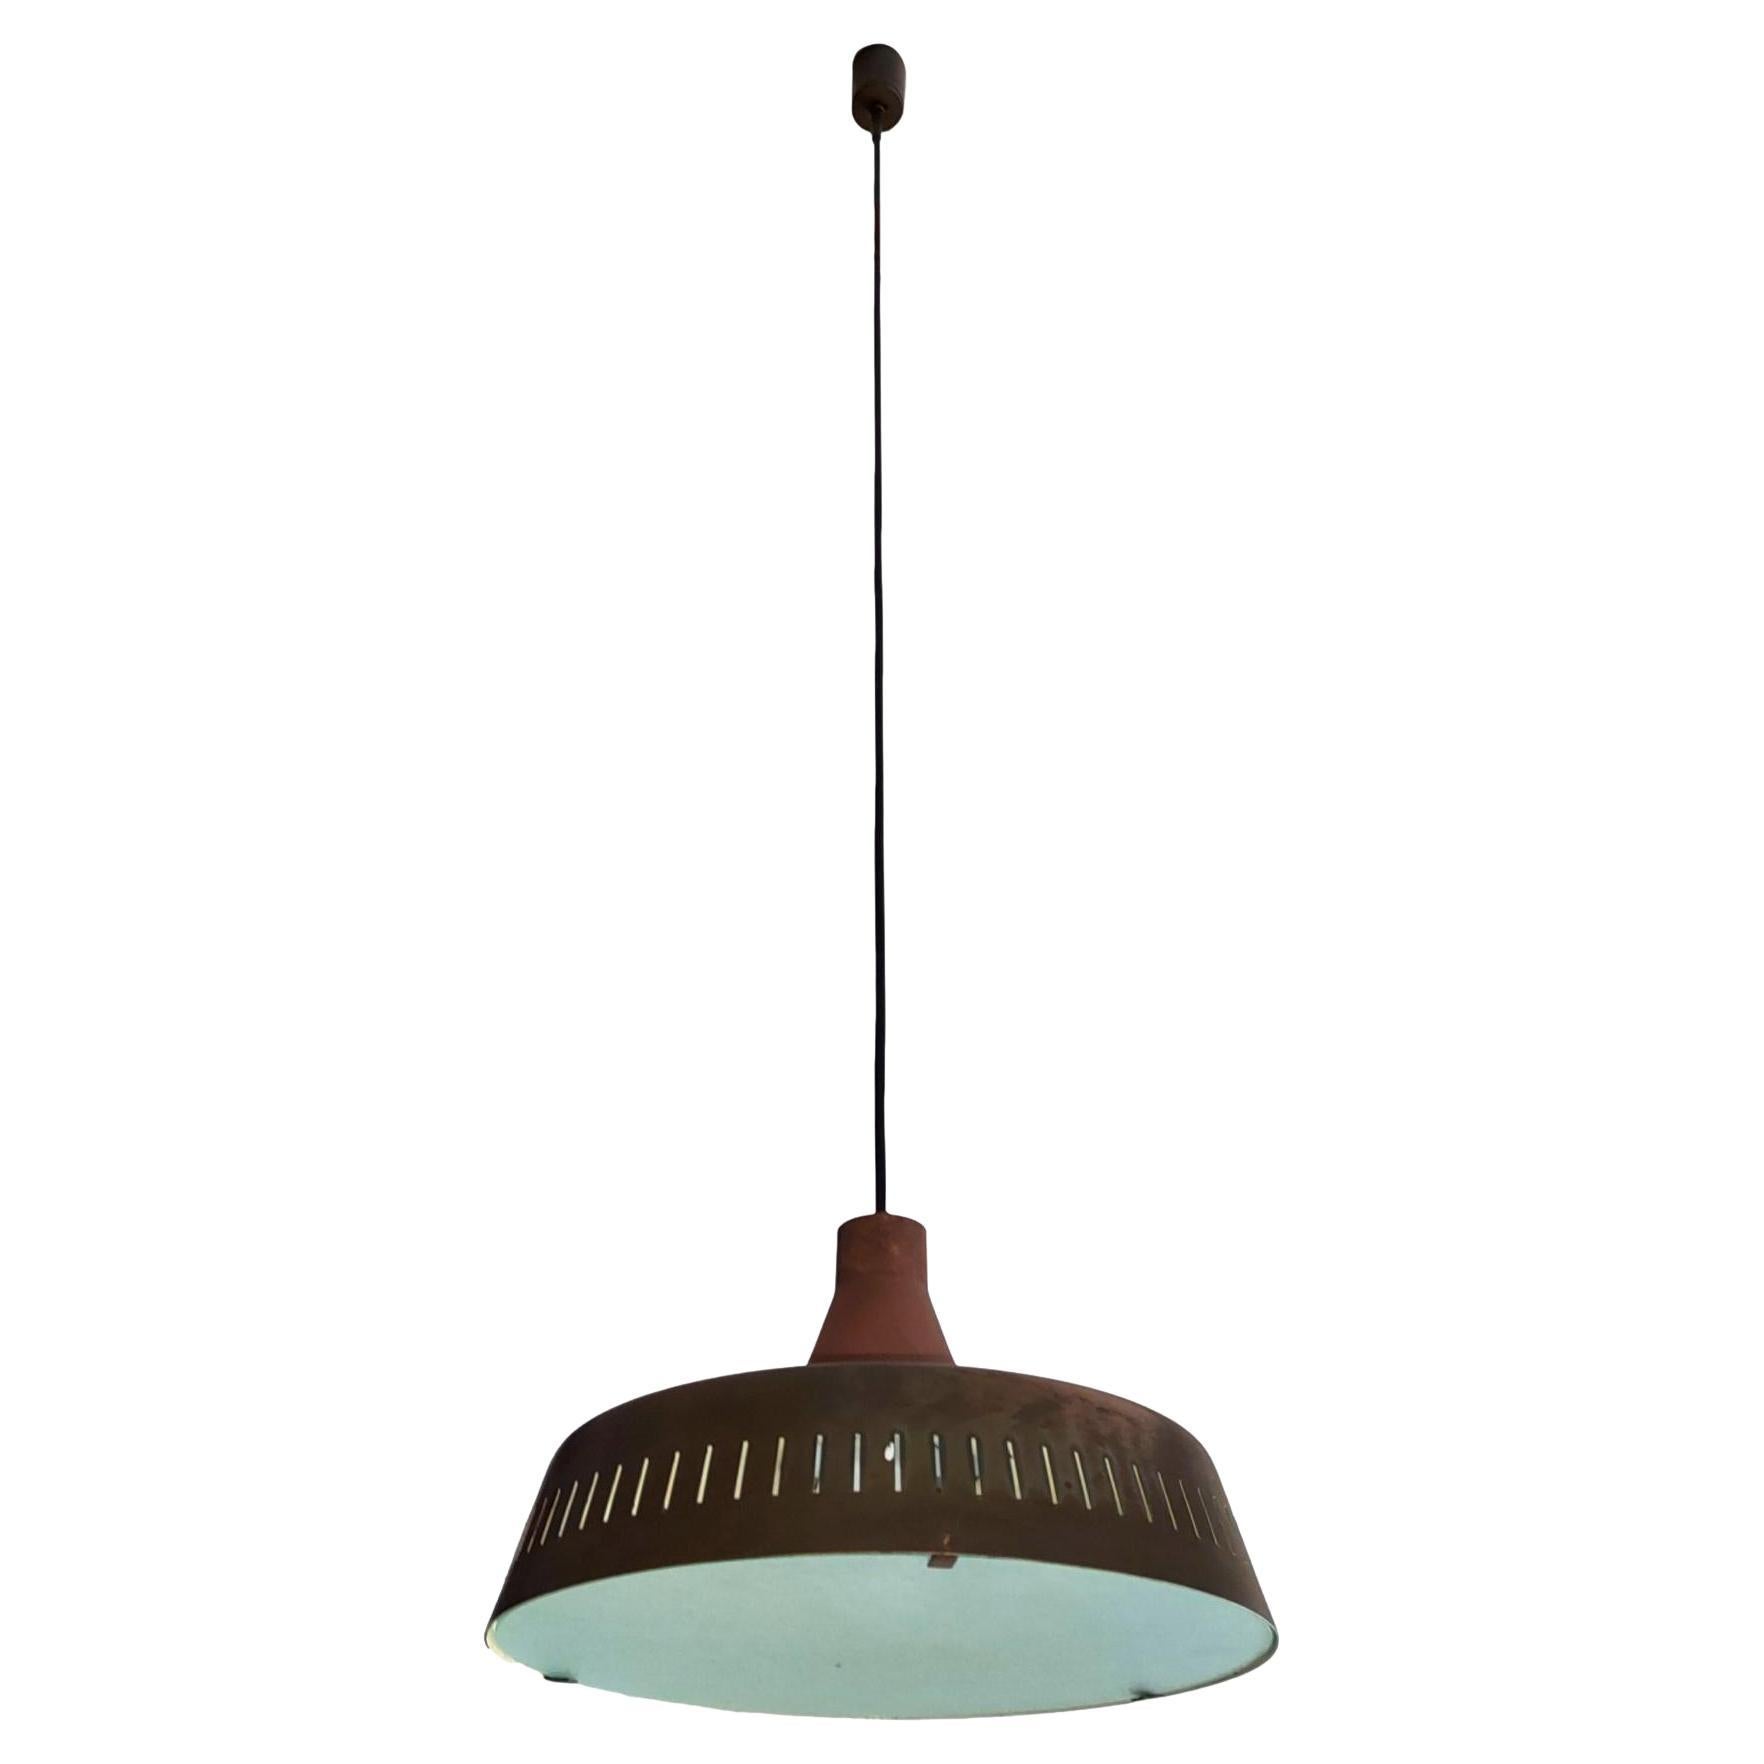 rare chandelier pendant design max ingrand for fontana arte 2233 model 1962